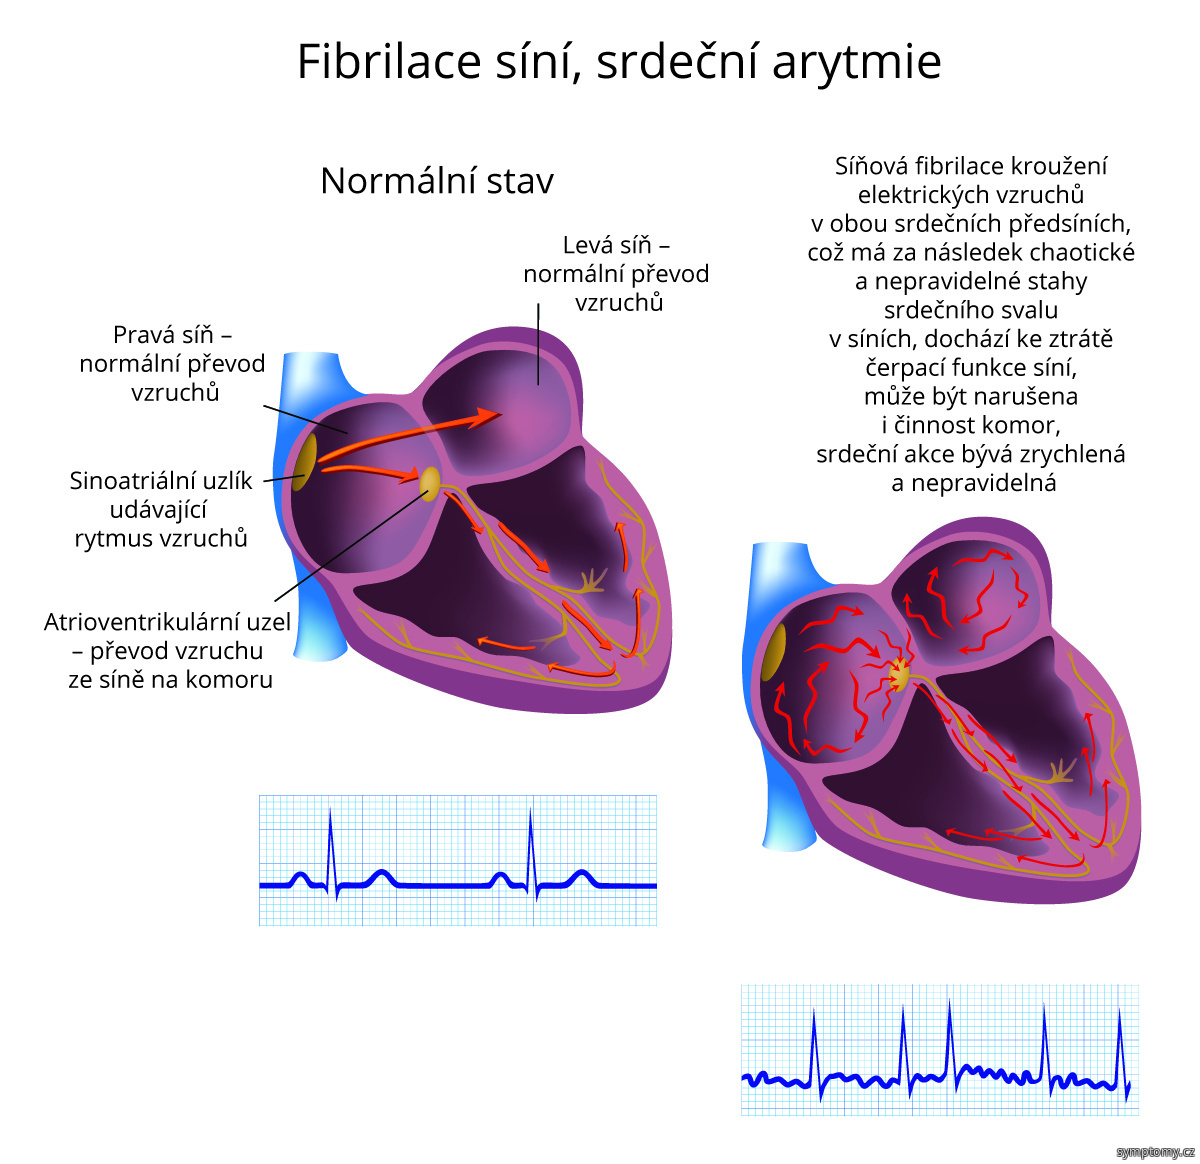 Fibrilace síní, srdeční arytmie